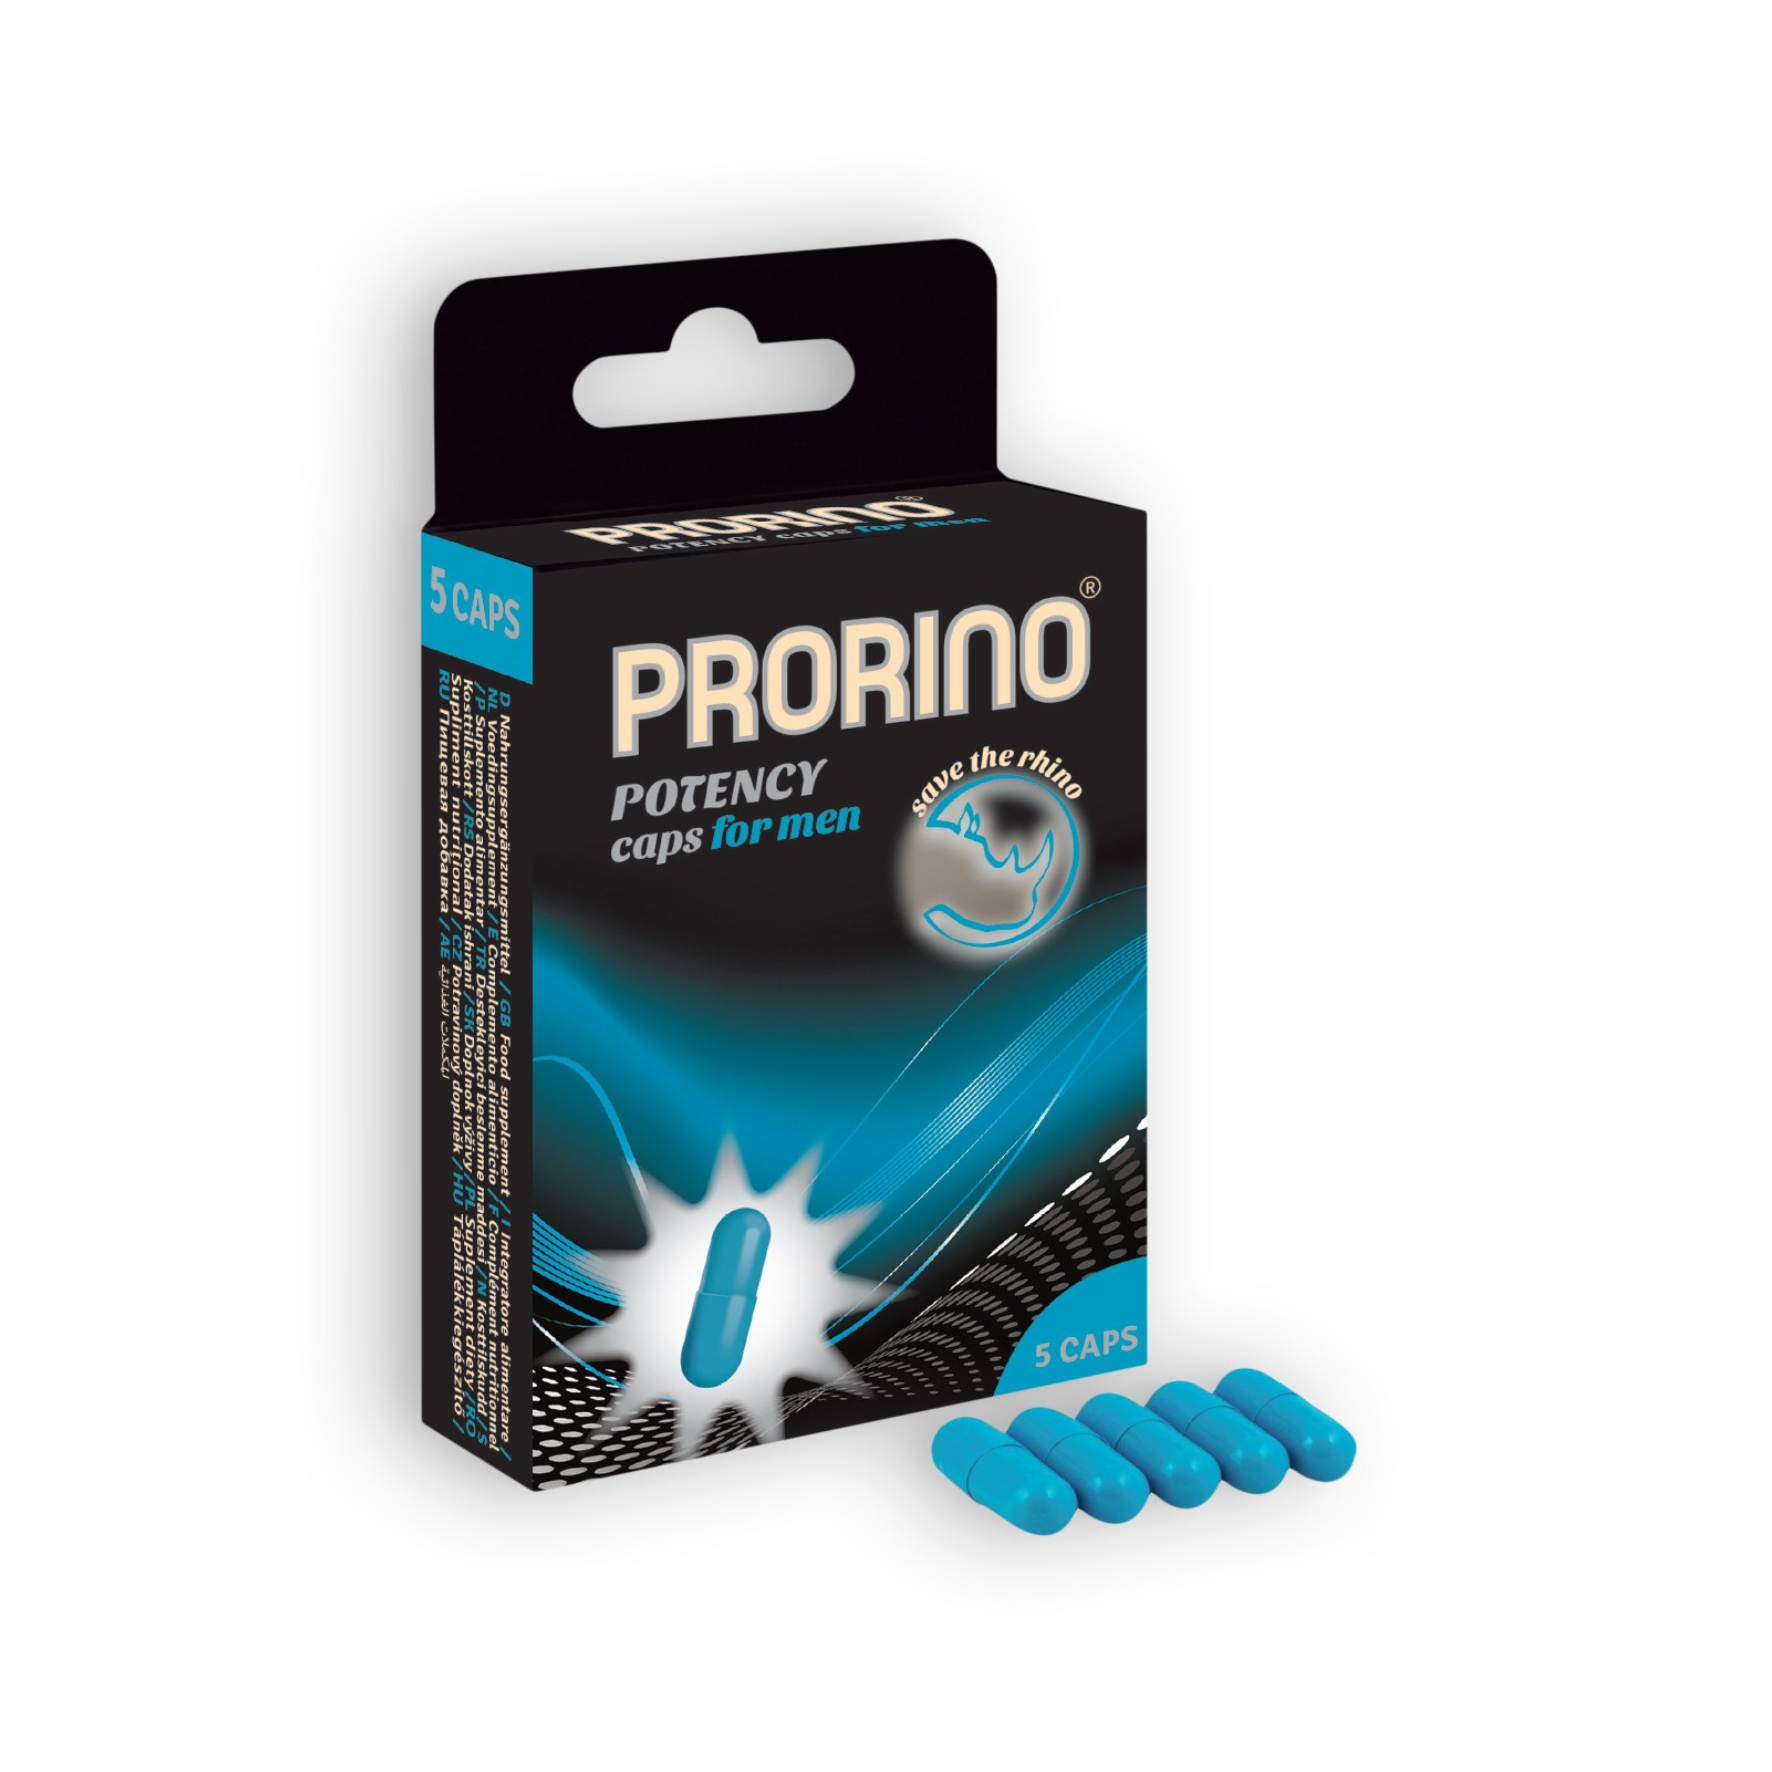 Maisto papildas potencijai stiprinti “HOT Prorino Potency Caps” - 5 vnt. 